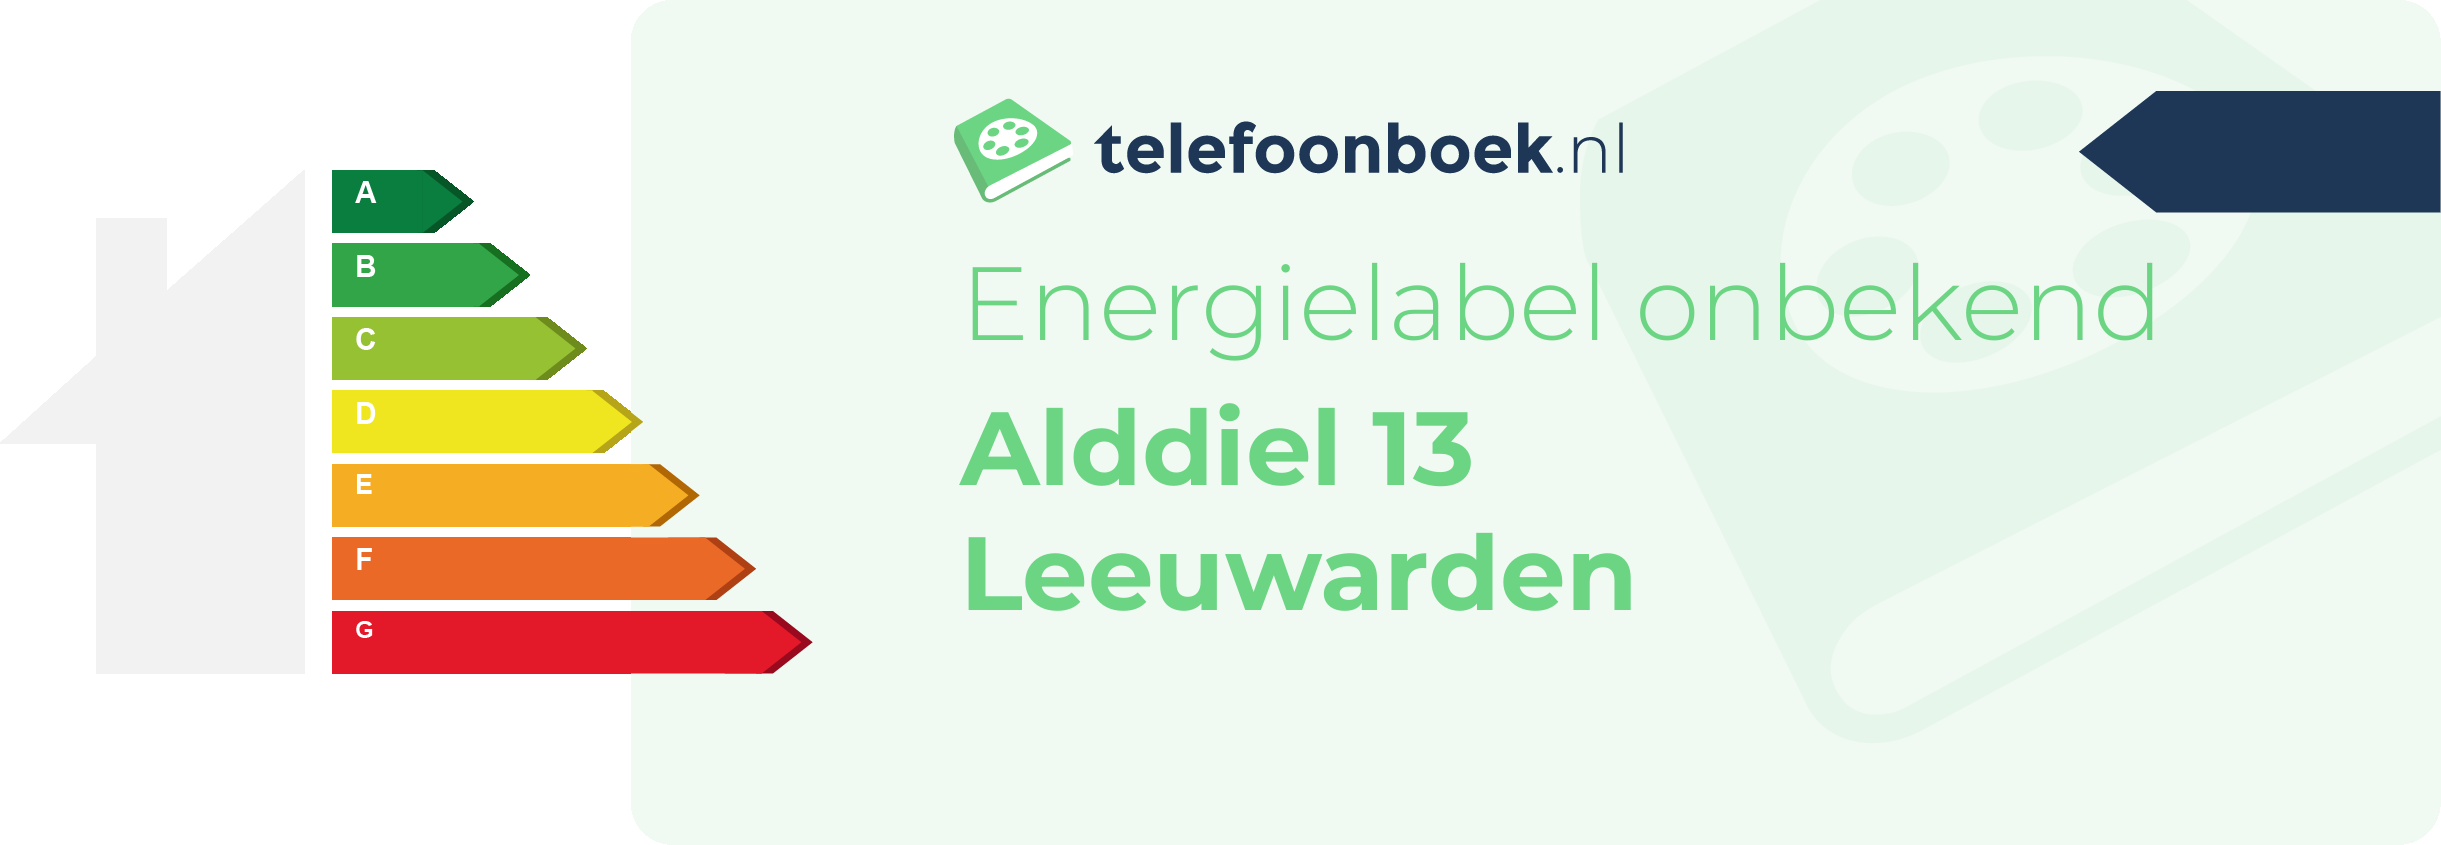 Energielabel Alddiel 13 Leeuwarden